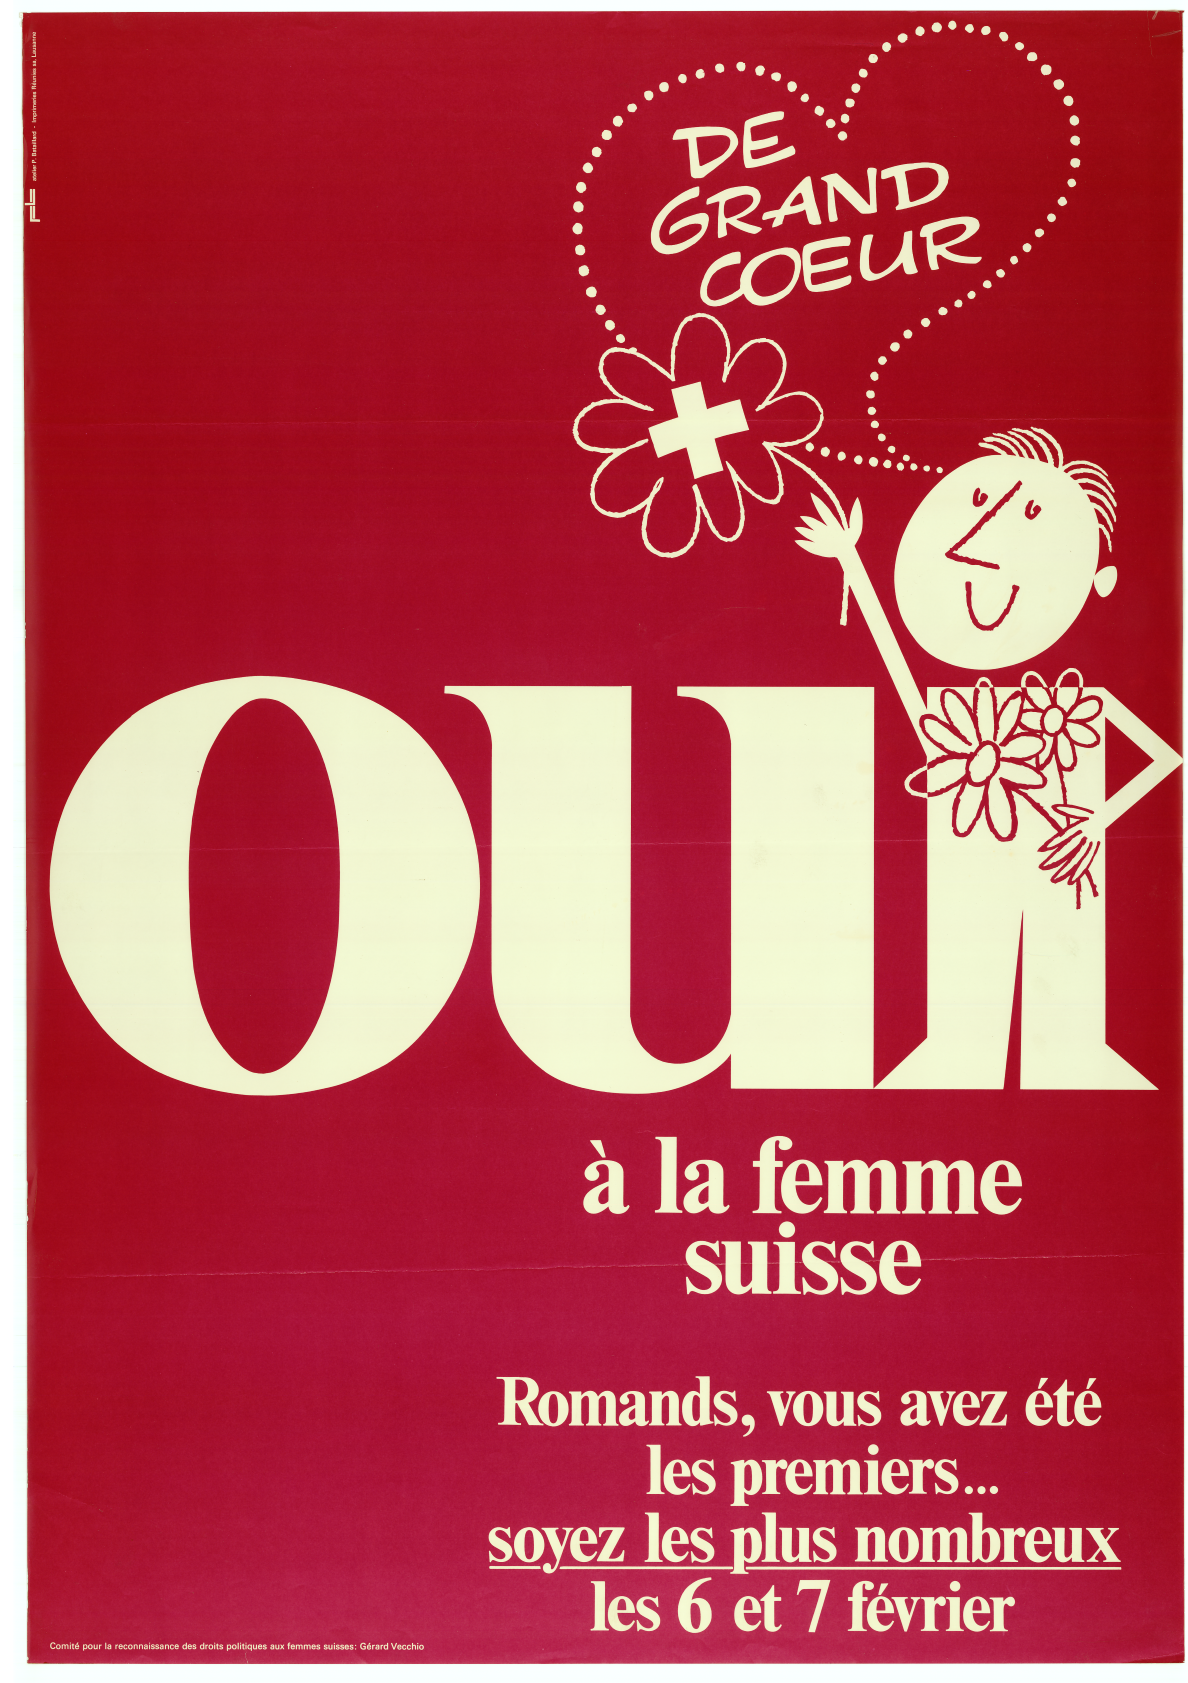 Comitato per il riconoscimento dei diritti politici delle donne svizzere, 1971 © Fondazione Gosteli, collezione di poster